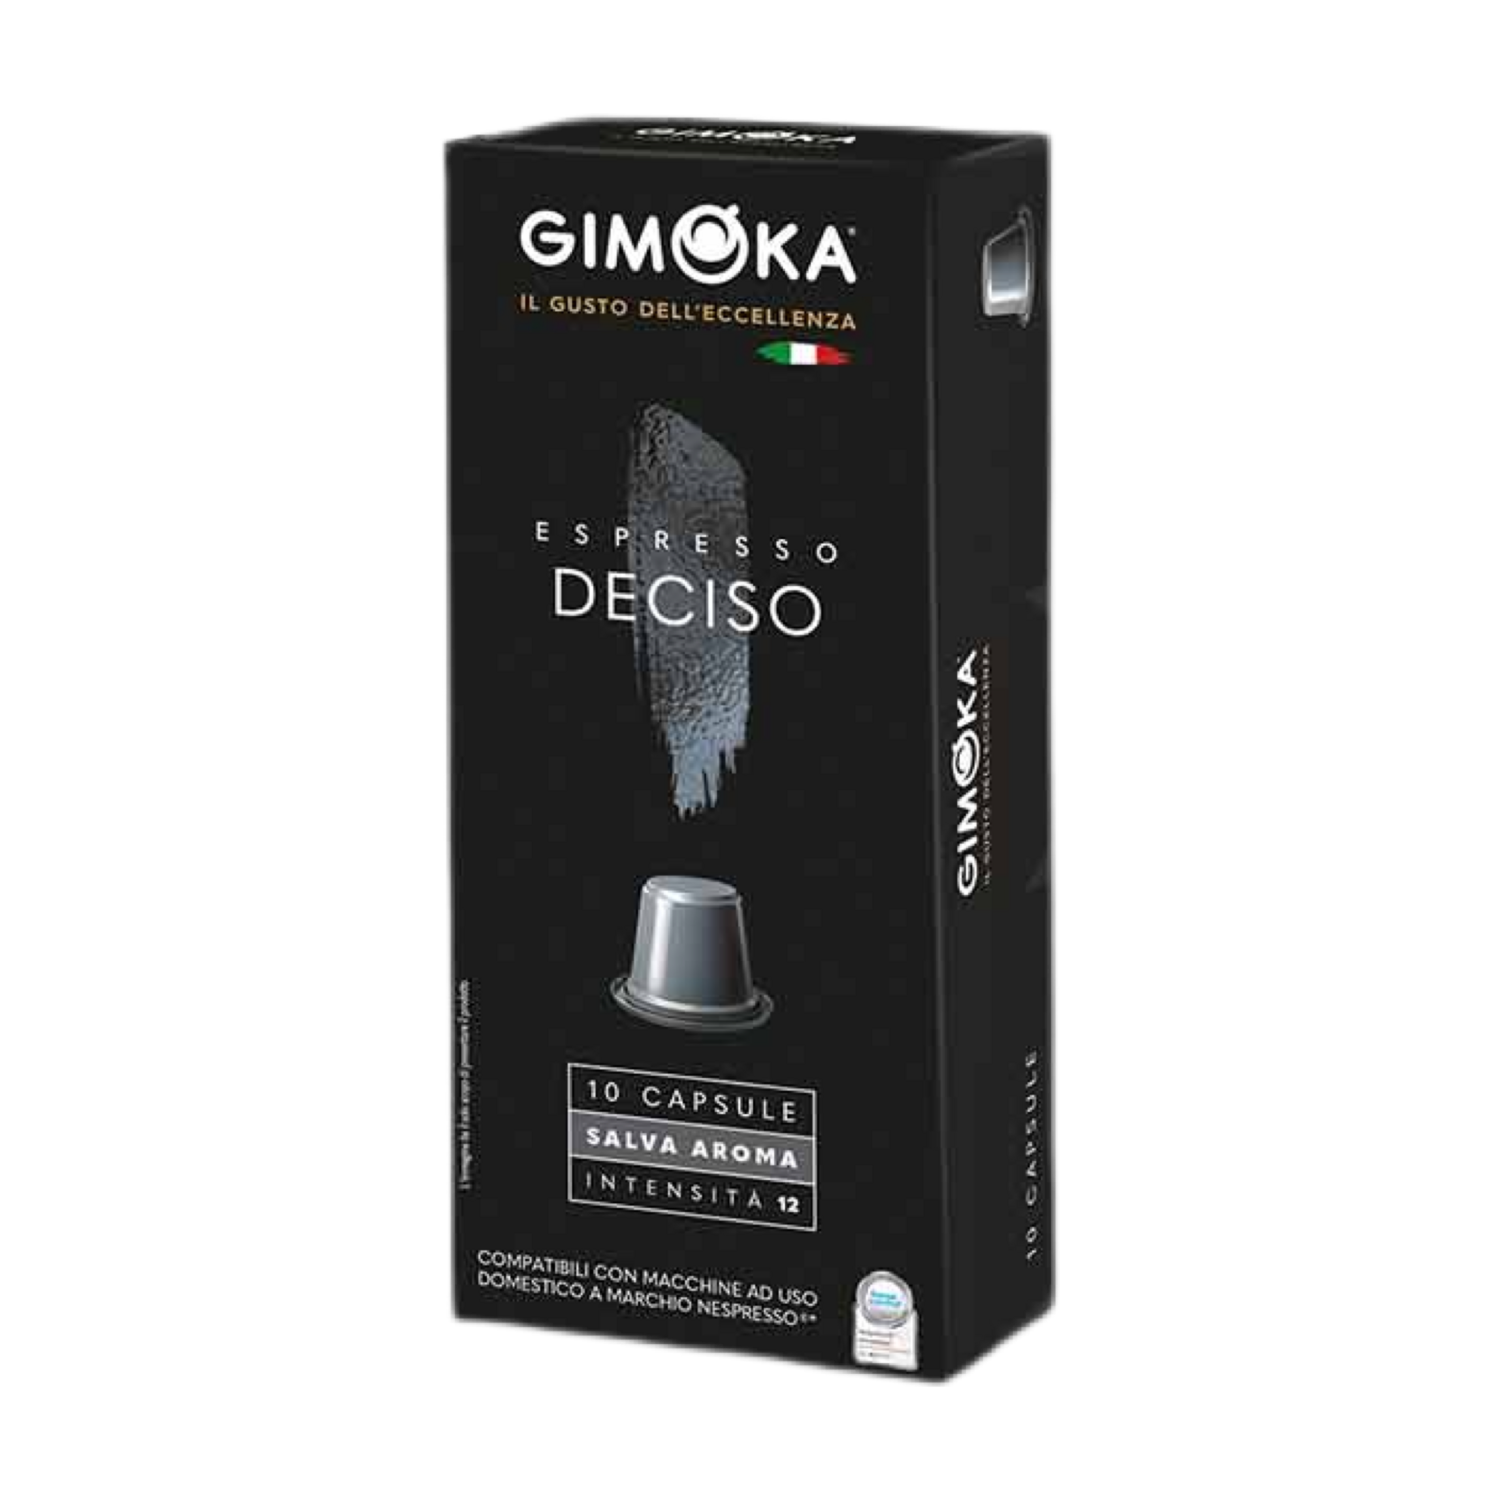 Gimoka Nespresso Deciso espresso x10 капсули